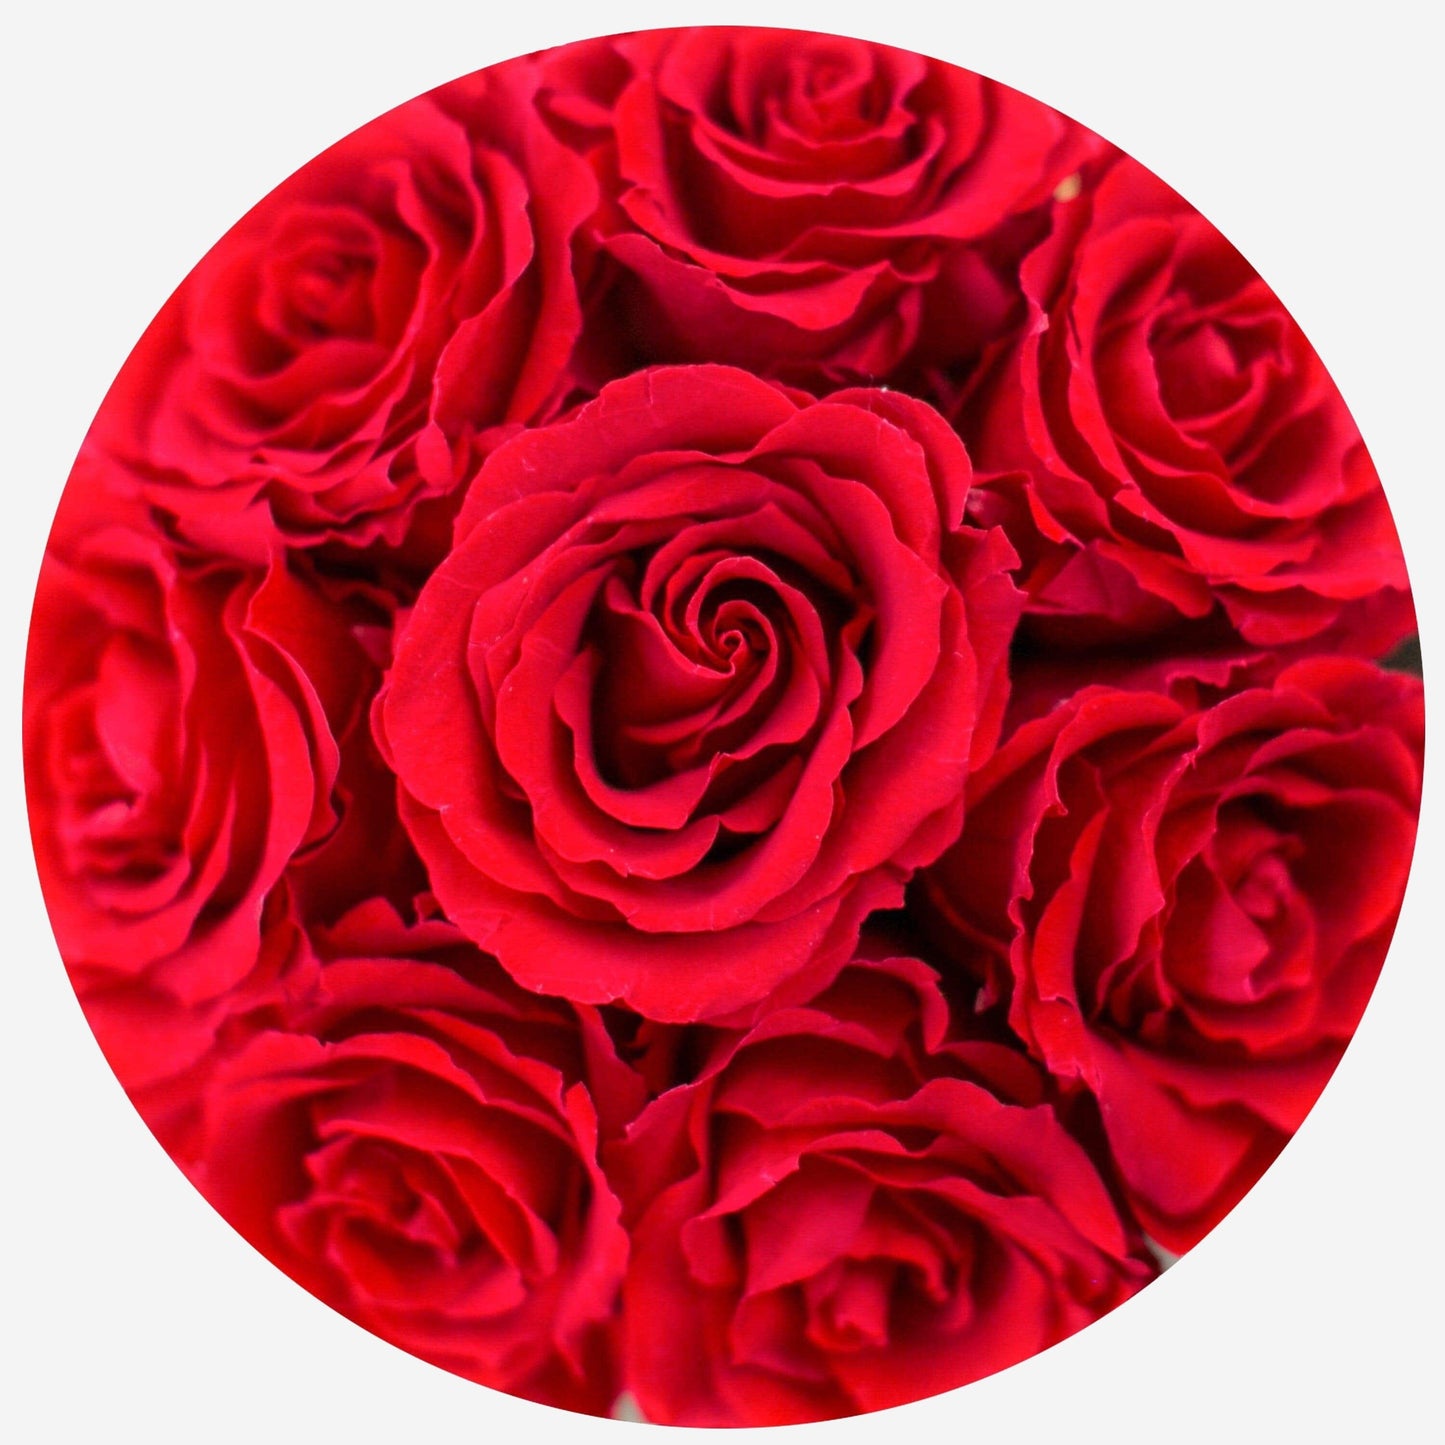 Basic White Box | Red Roses - The Million Roses